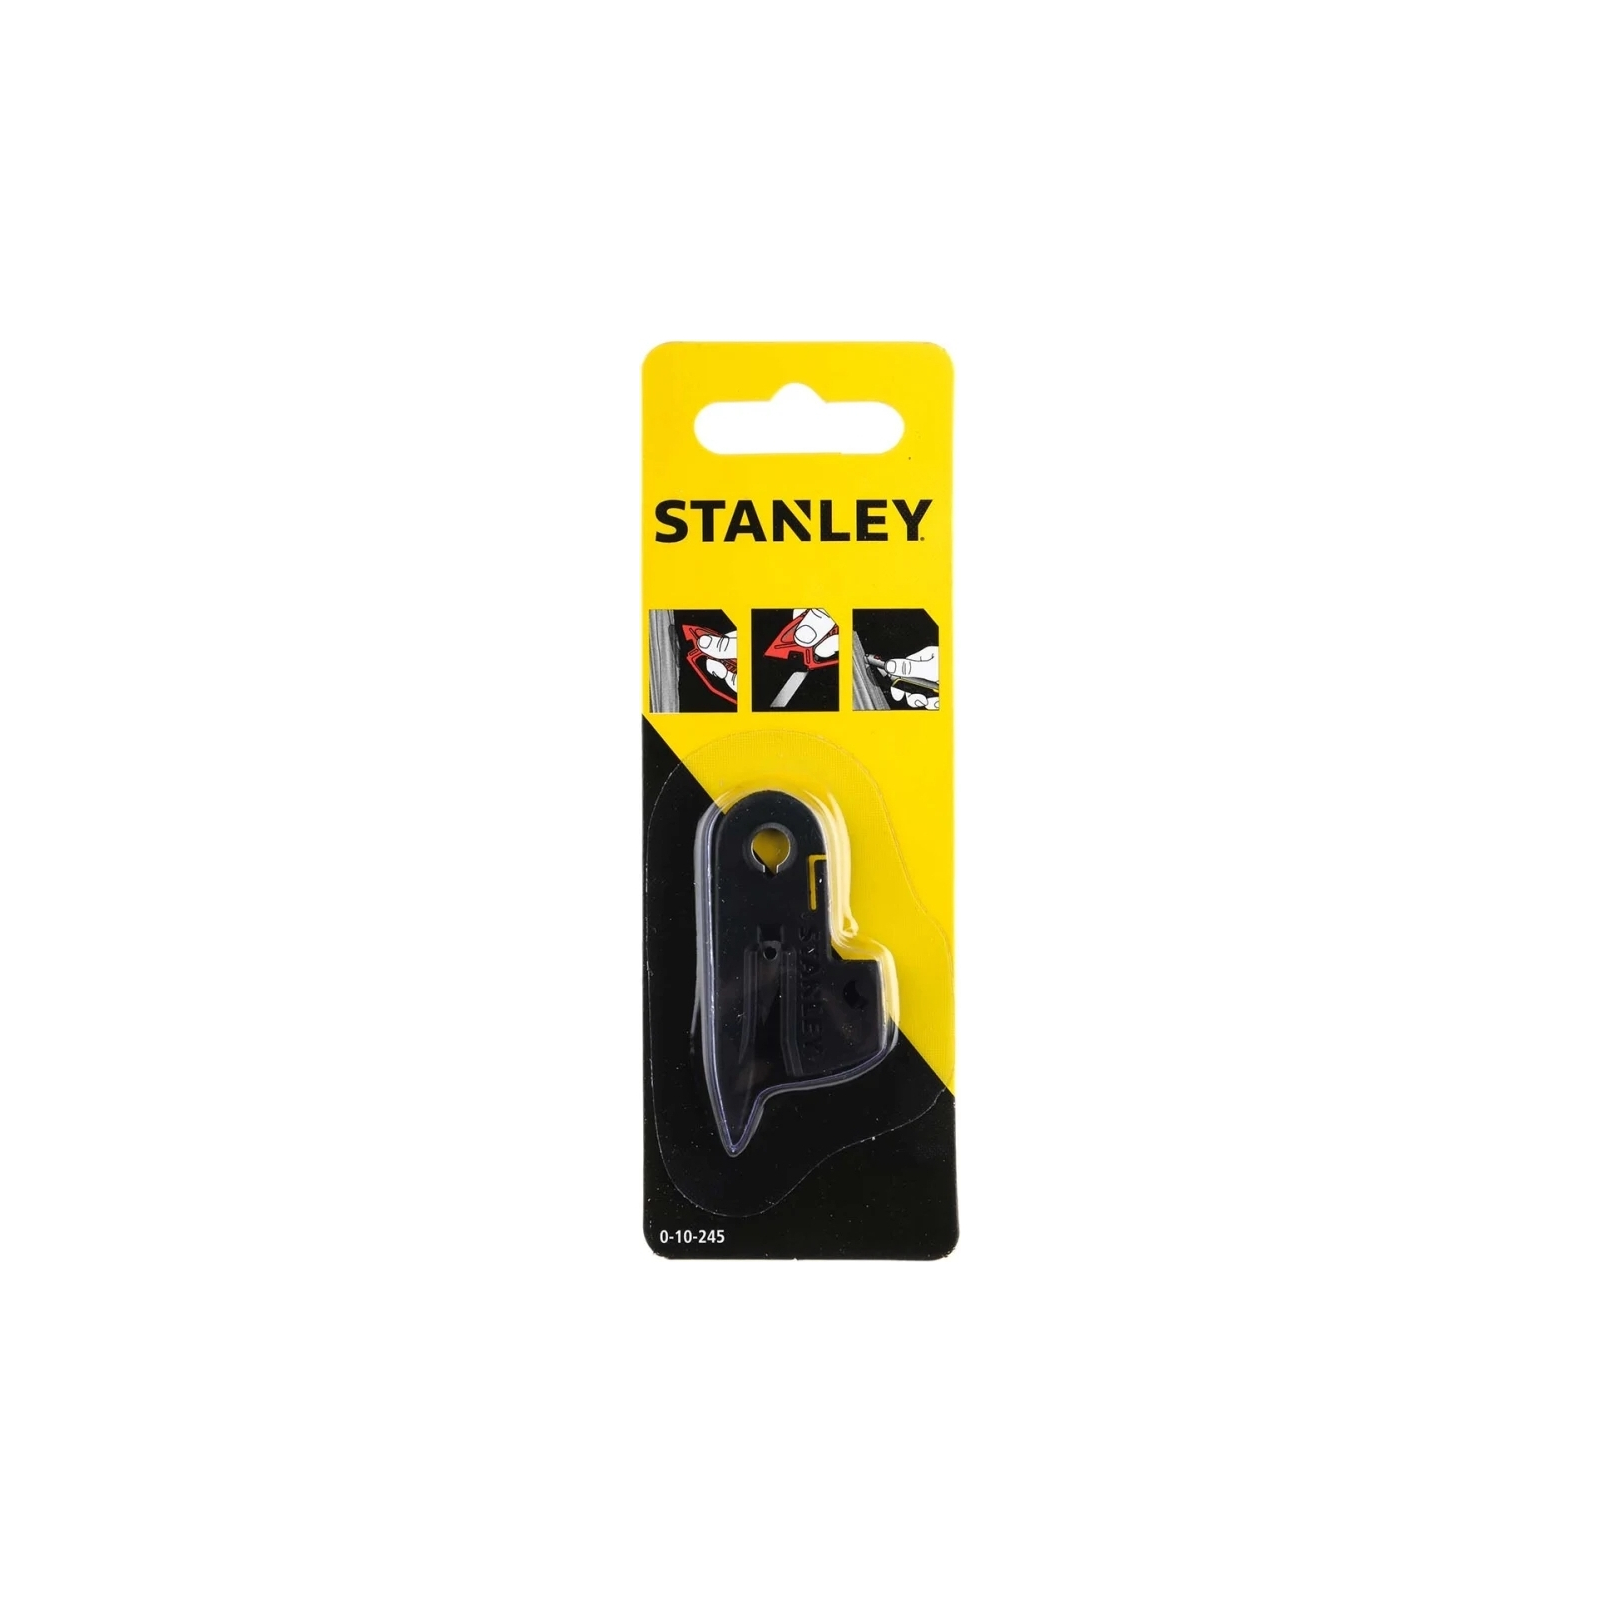 Лезвие Stanley для ножа 0-10-244, в пластиковом корпусе. (0-10-245) изображение 3